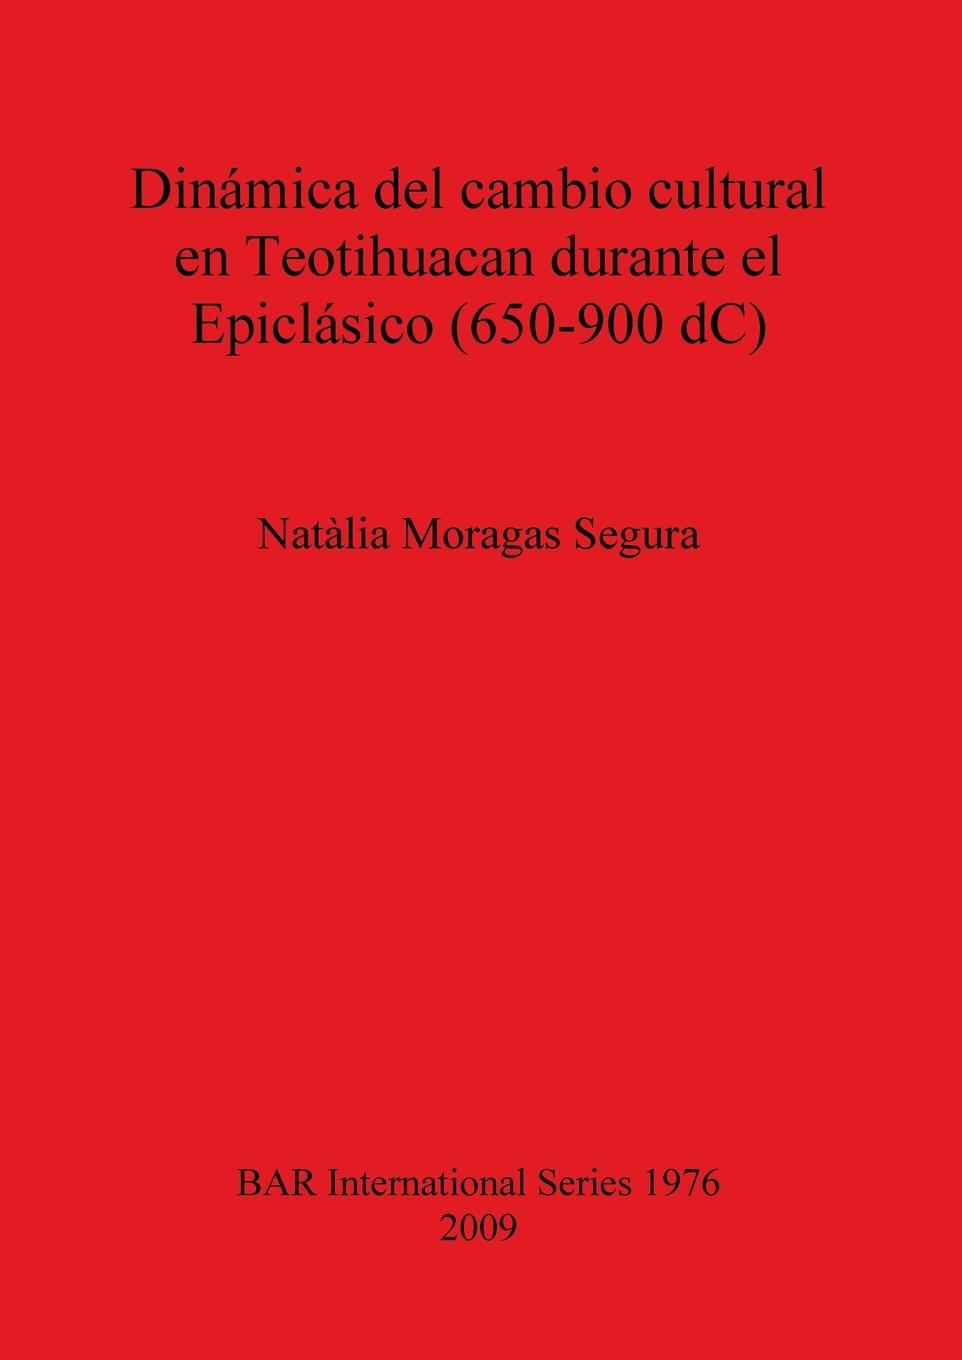 Dinámica del cambio cultural en Teotihuacan durante el Epiclásico (650-900 dC) - Moragas Segura, Natàlia